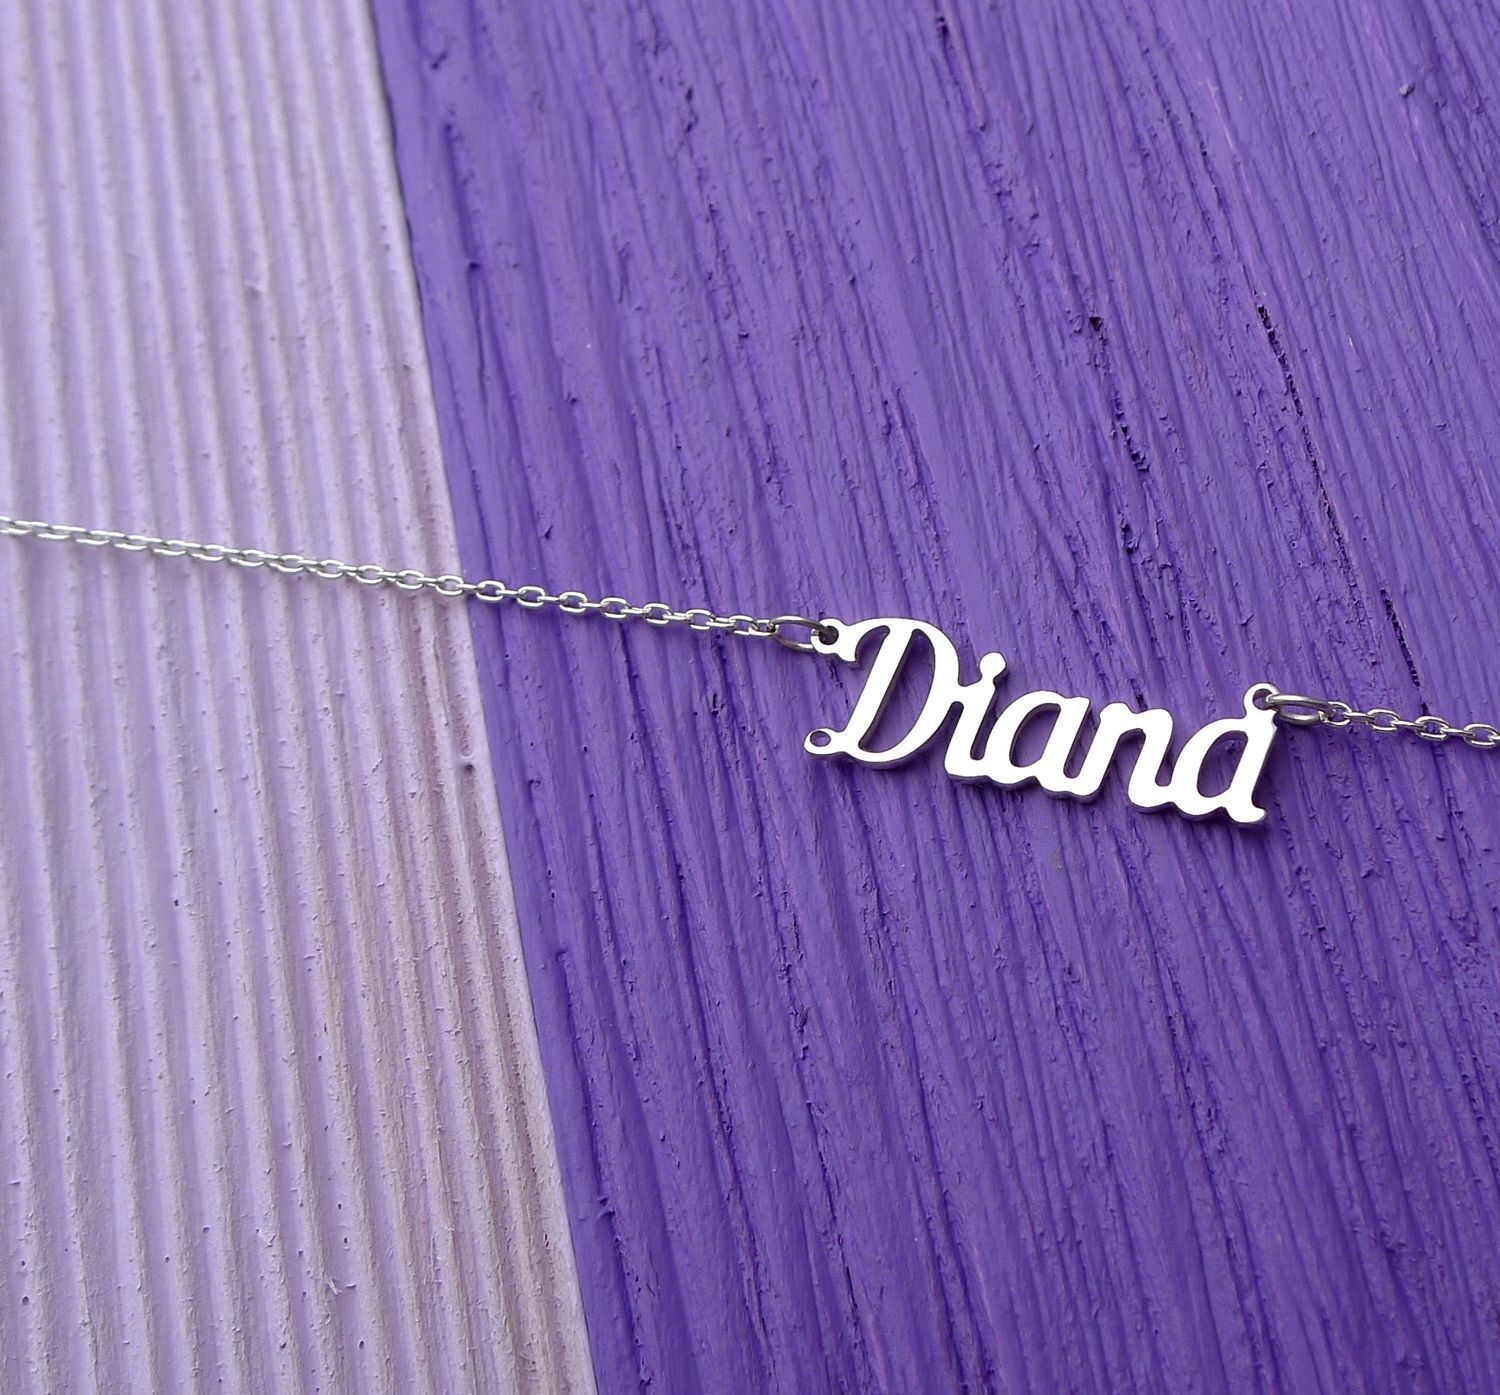 26. Серебряная именная подвеска с именем Diana из серебра. Подвеска имя Диана